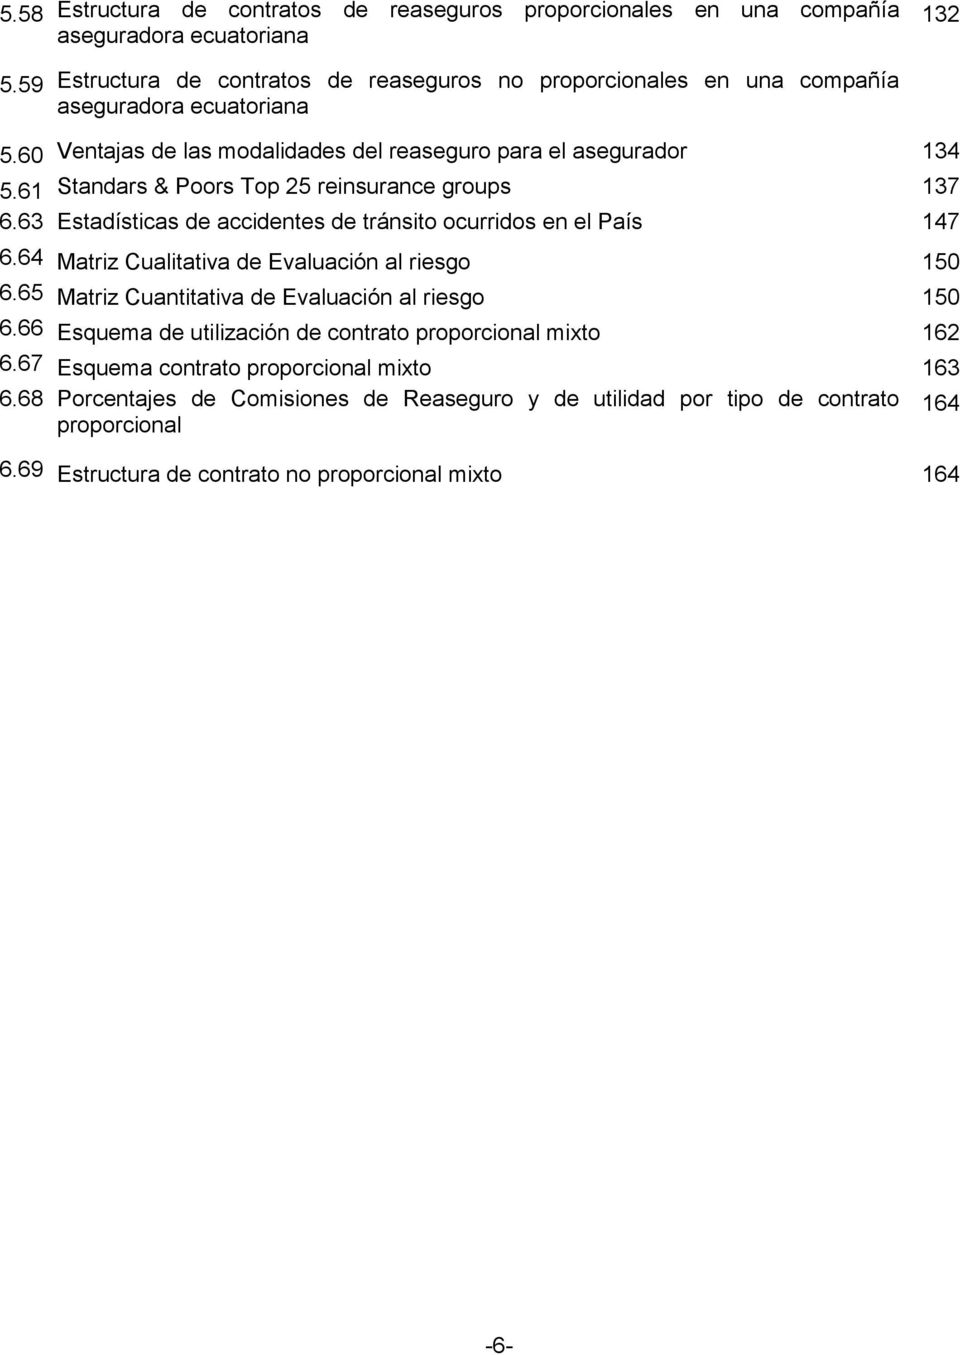 61 Standars & Poors Top 25 reinsurance groups 137 6.63 Estadísticas de accidentes de tránsito ocurridos en el País 147 6.64 Matriz Cualitativa de Evaluación al riesgo 150 6.